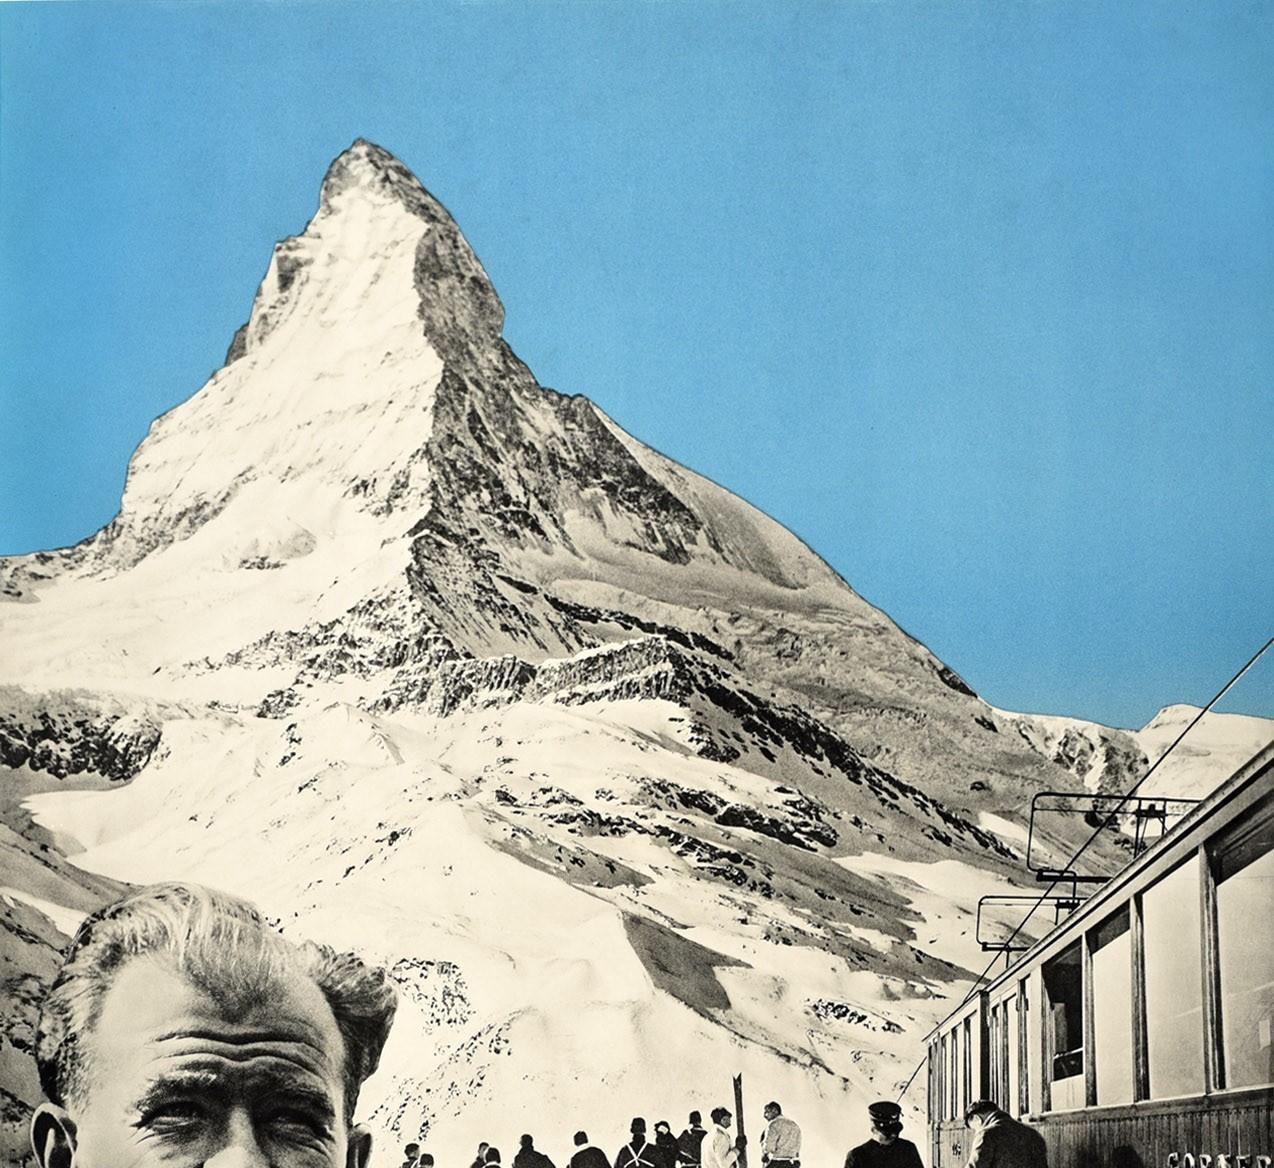 Affiche de voyage originale pour le ski et les sports d'hiver dans la station de ski populaire de Zermatt en Suisse, comportant un rare photomontage réalisé par Emil Schulthess (1913-1996) représentant un train du Gornergrat et des skieurs sur le